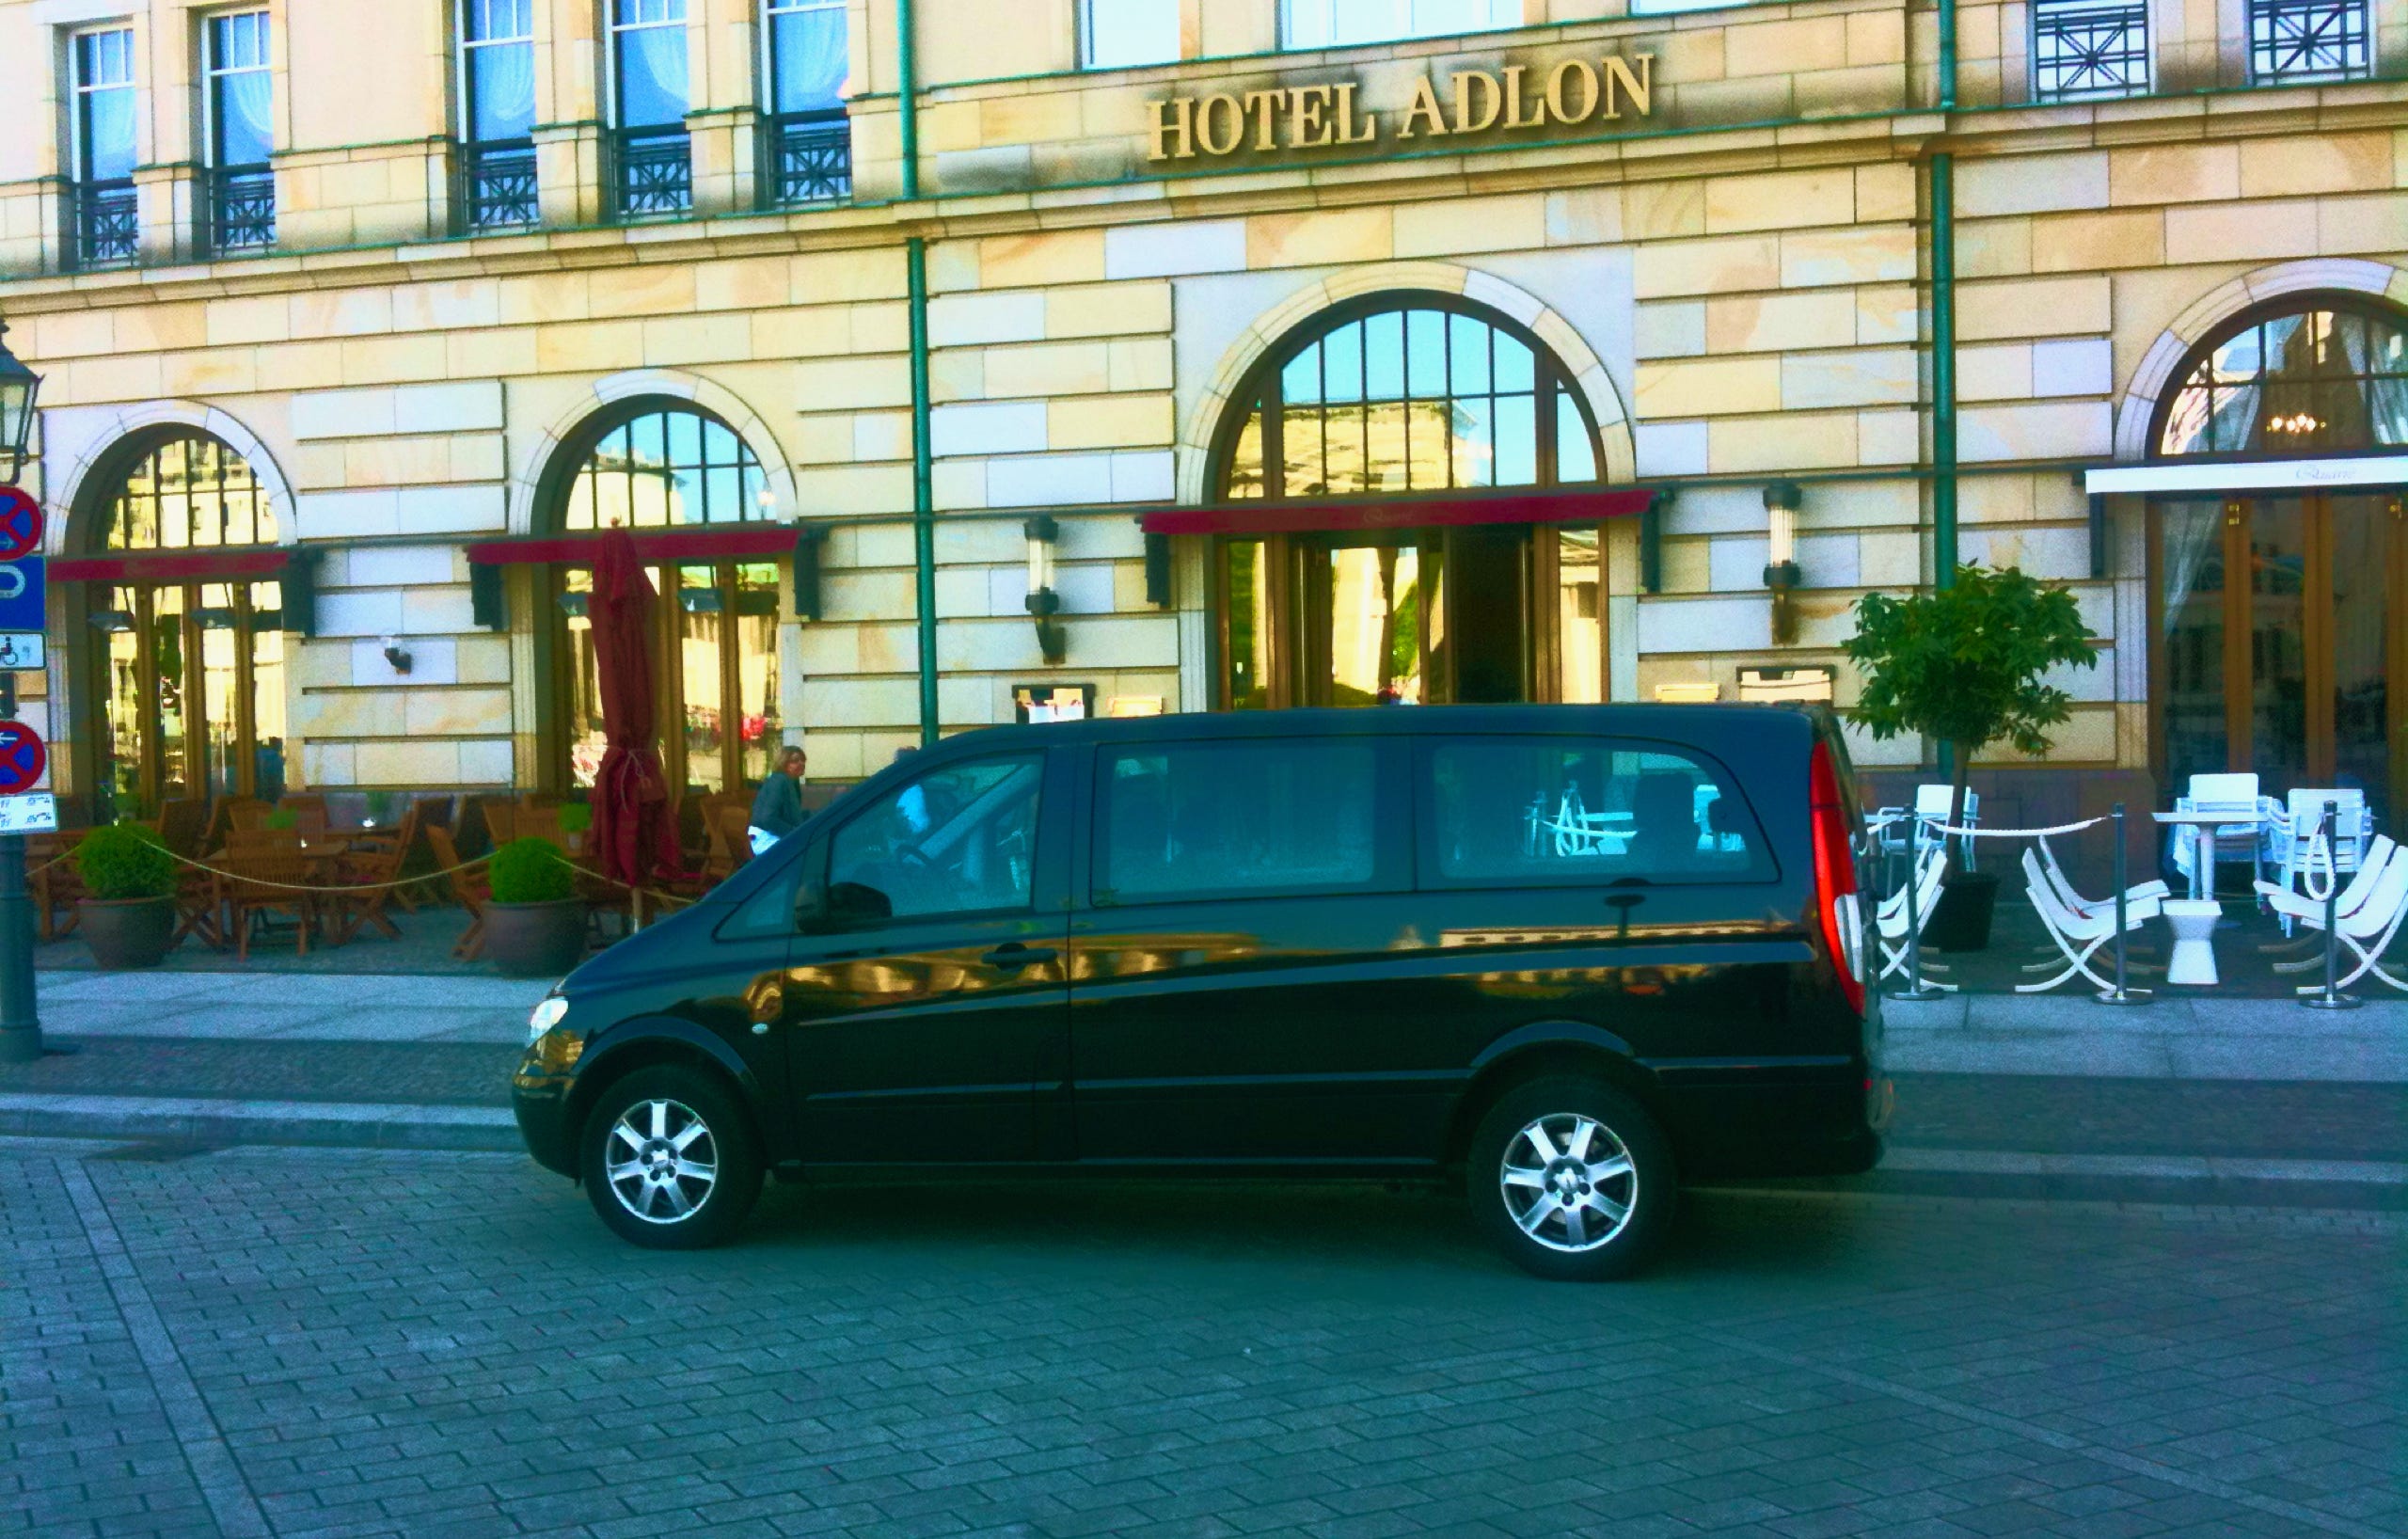 Der Van vor dem Hotel Adlon am Pariser Platz